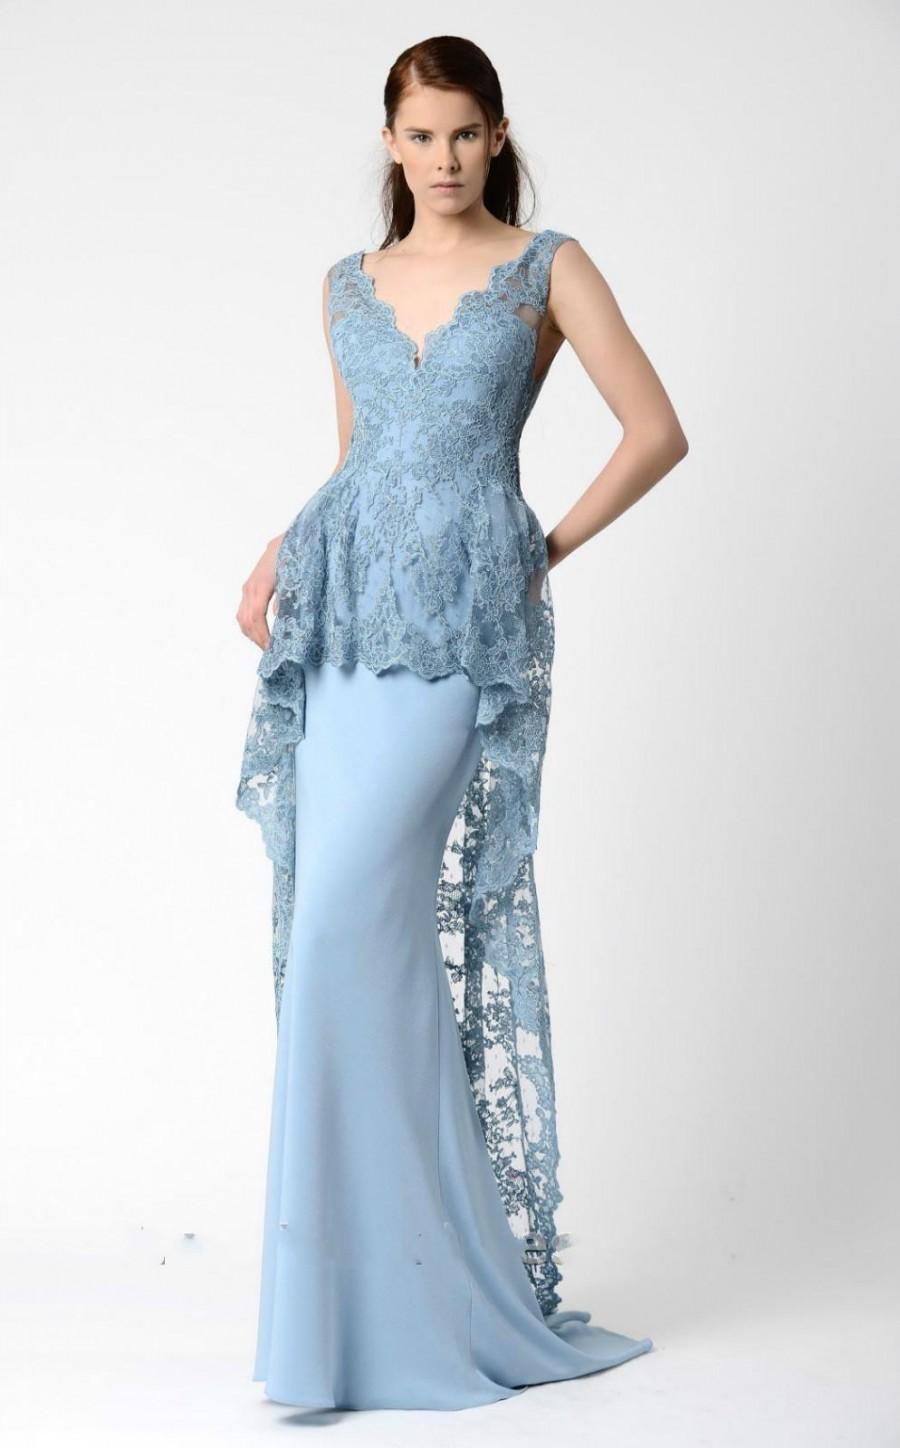 زفاف - 2016 Mermaid Evening Dresses Gowns Formal Prom With V Neck Sheer Neckline Sexy Bare Back Appliqued Blue Lace Party Formal Full Length Online with $126.39/Piece on Hjklp88's Store 